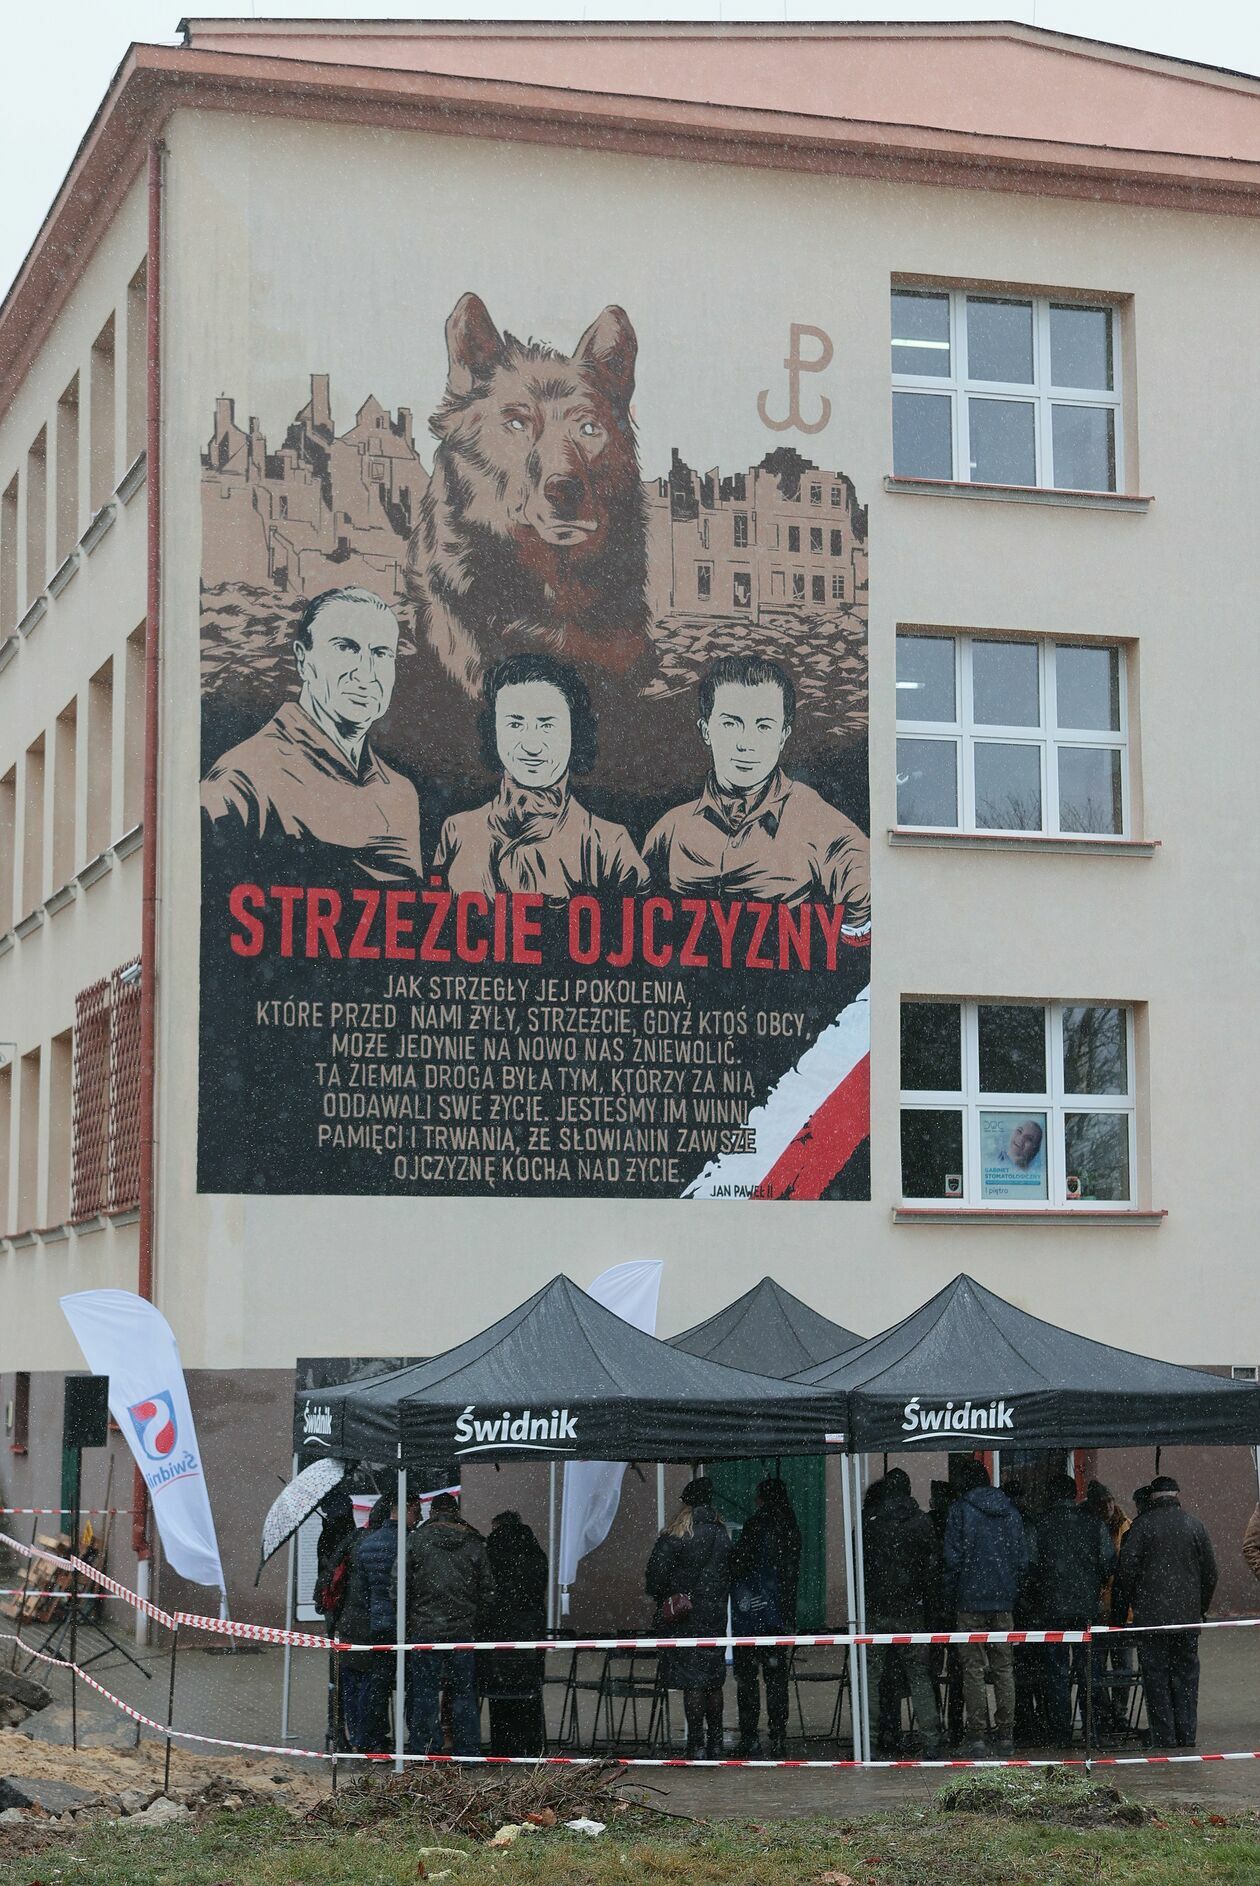  Nowy mural w Świdniku  - Autor: Piotr Michalski